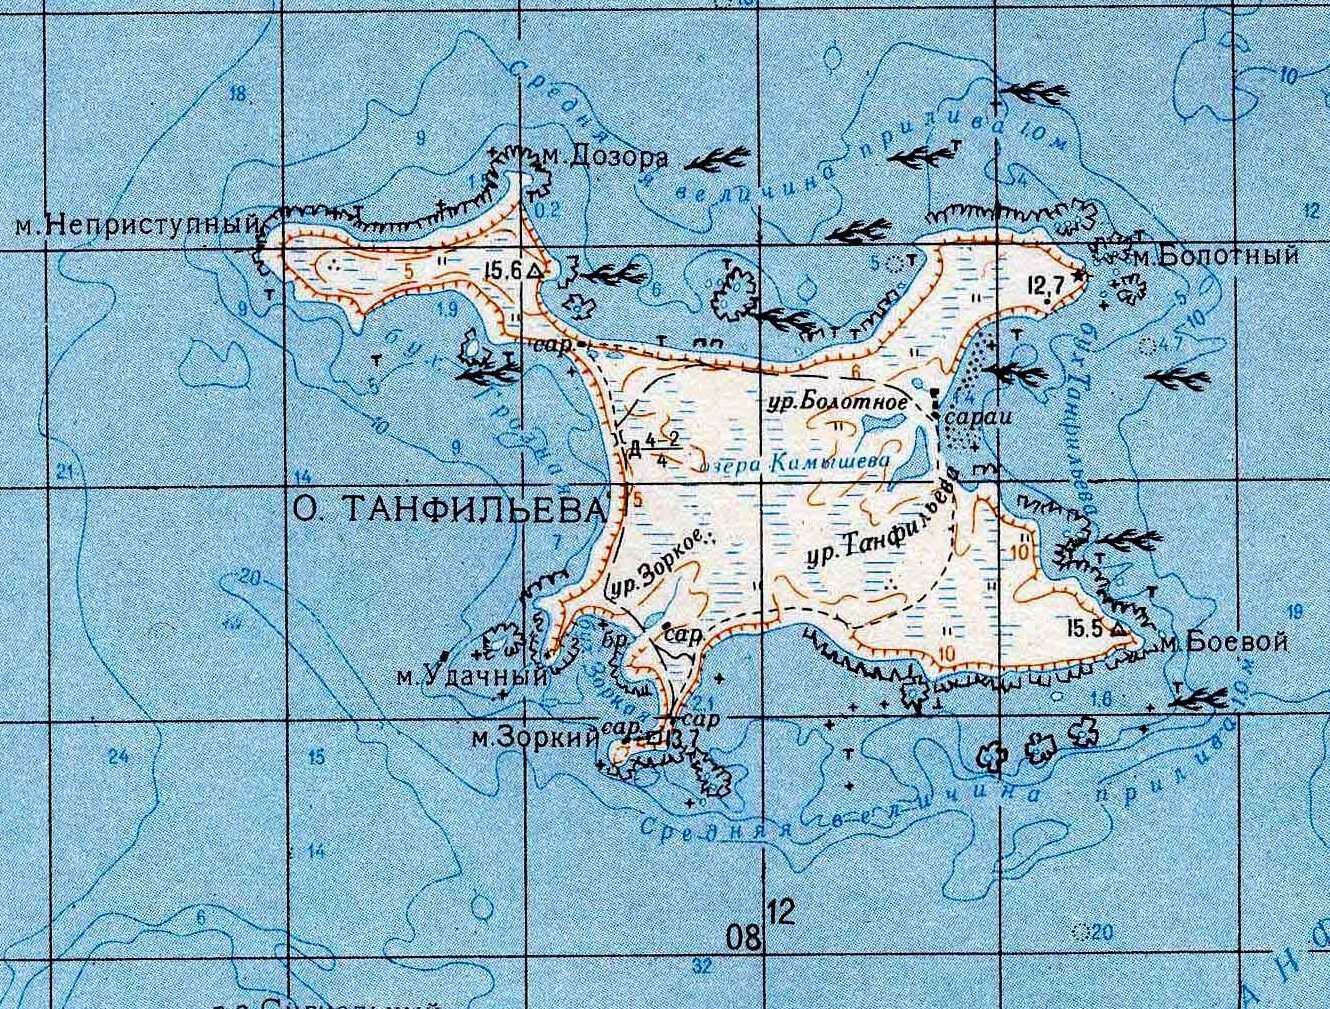 歯舞群島の地質図（水晶島）: 北方領土の地下資源について